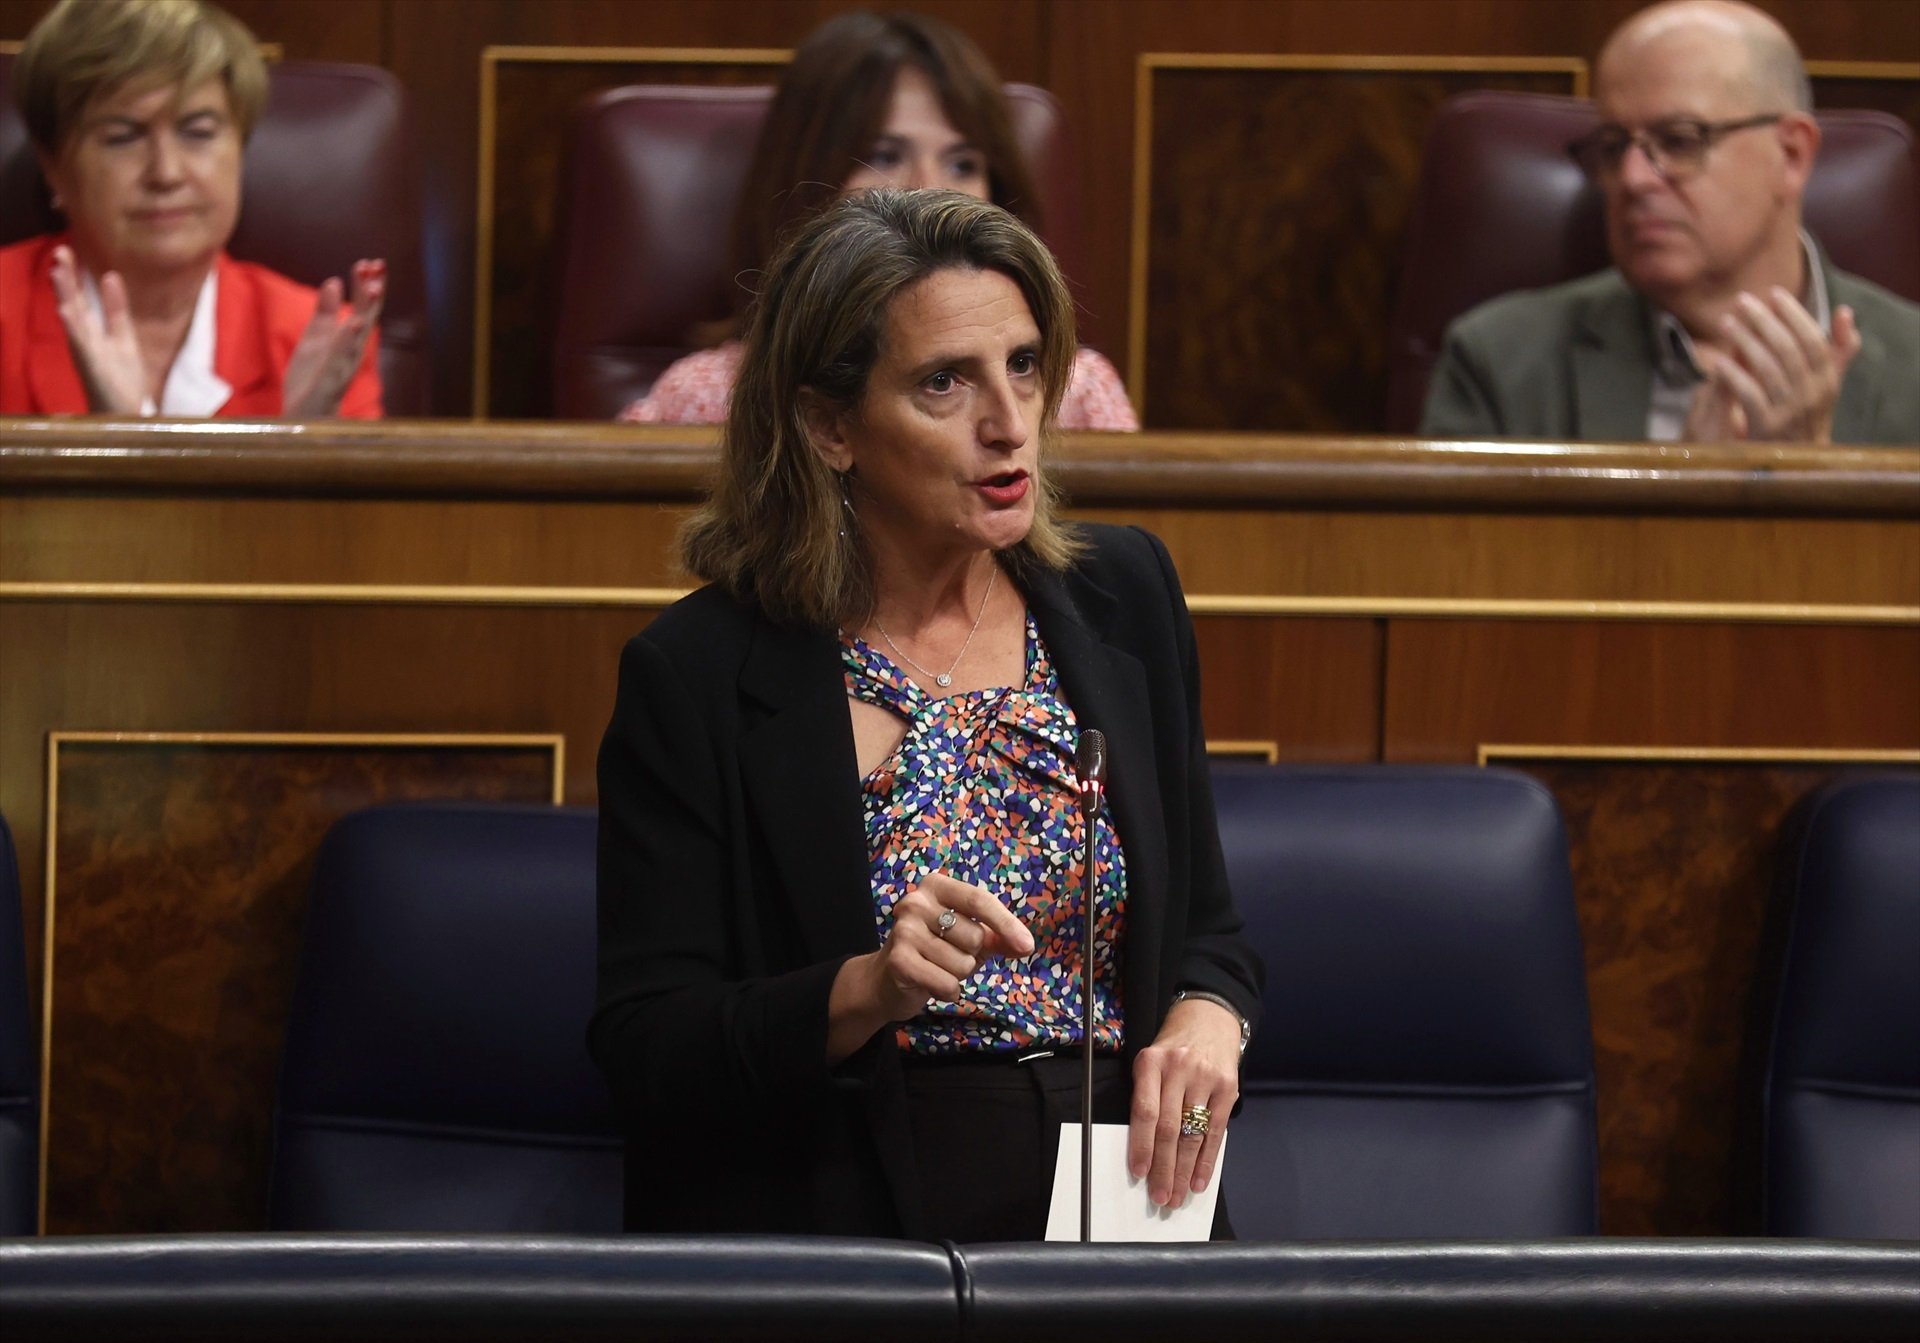 La vicepresidenta del govern espanyol i ministra per a la transformació ecològica i el repte demogràfic, Teresa Ribera |Foto: Europa Press